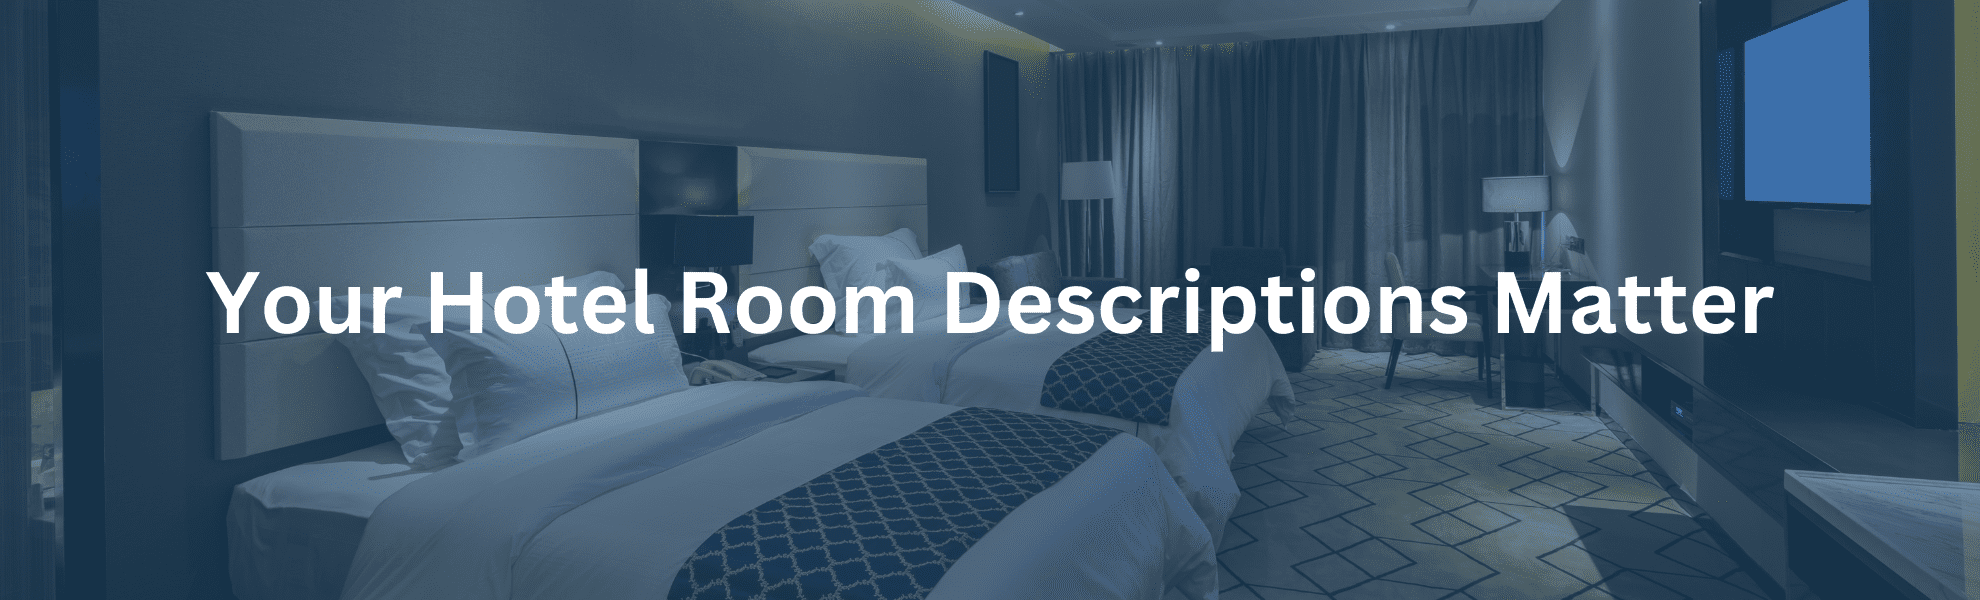 Hotel Room Descriptions Matter: Optimize For Conversions